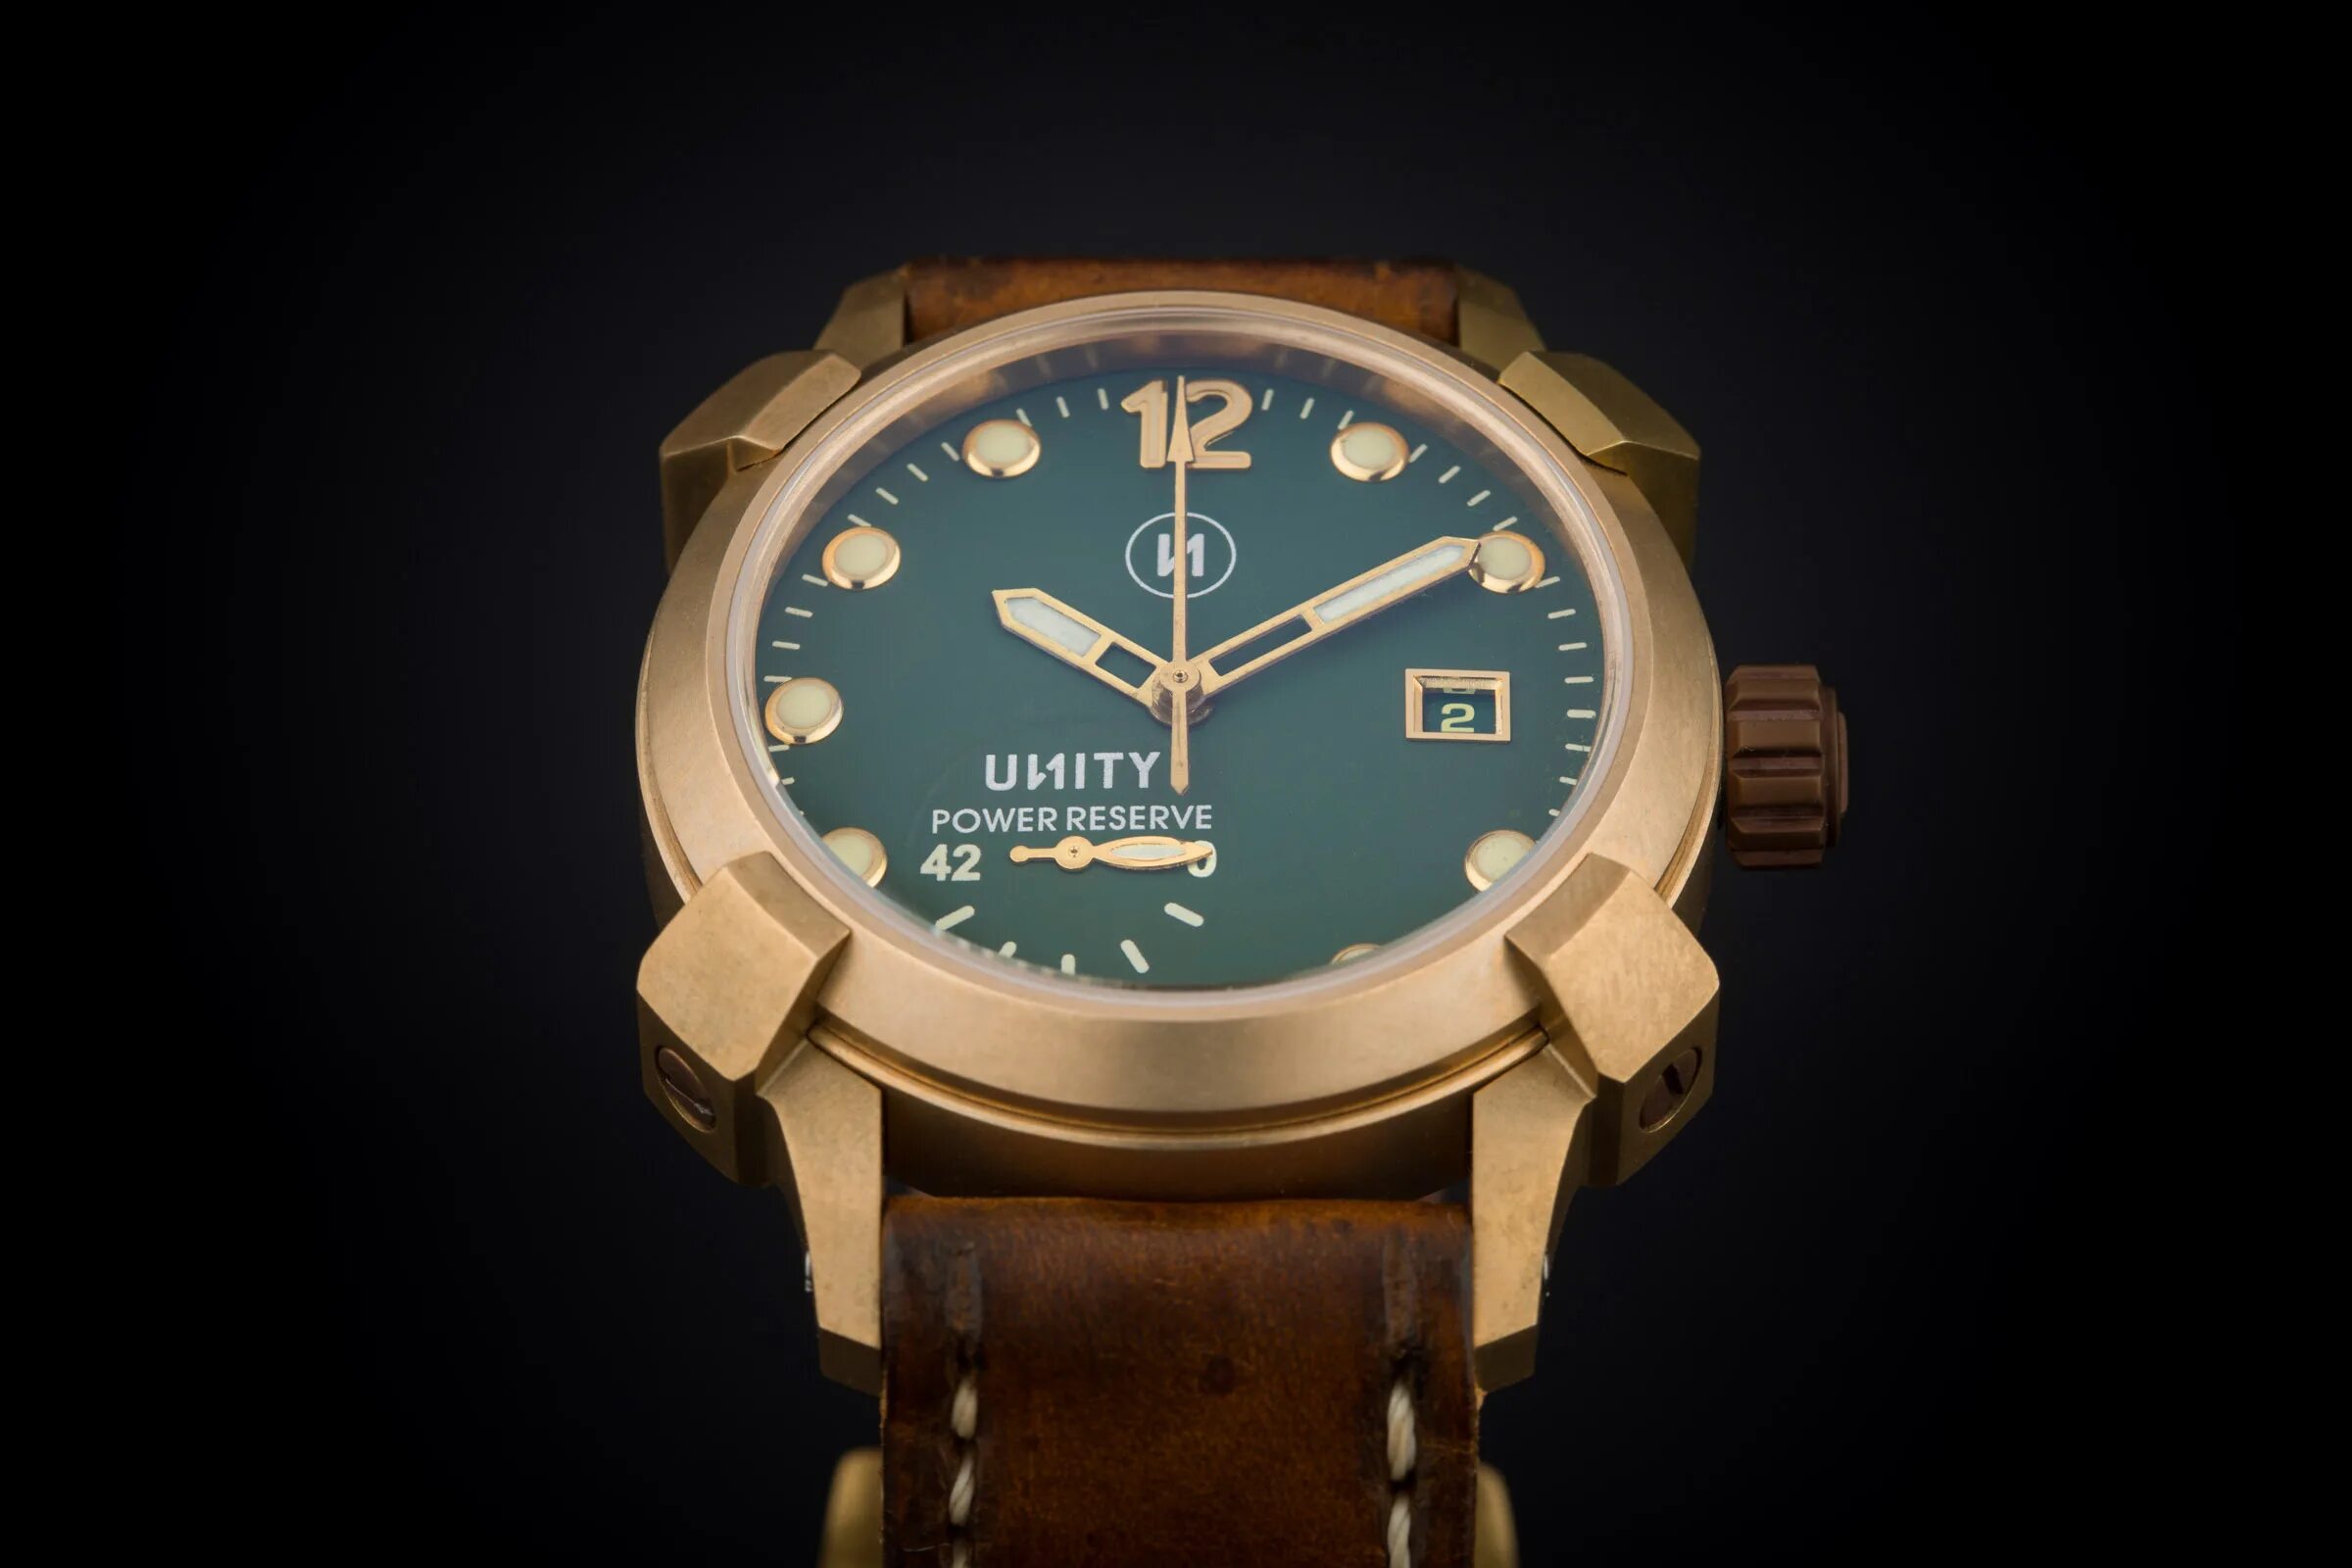 Часы Bronze and Green. Часы для Юнити. Diesel Limited часы бронза. Наручные часы от Unity.